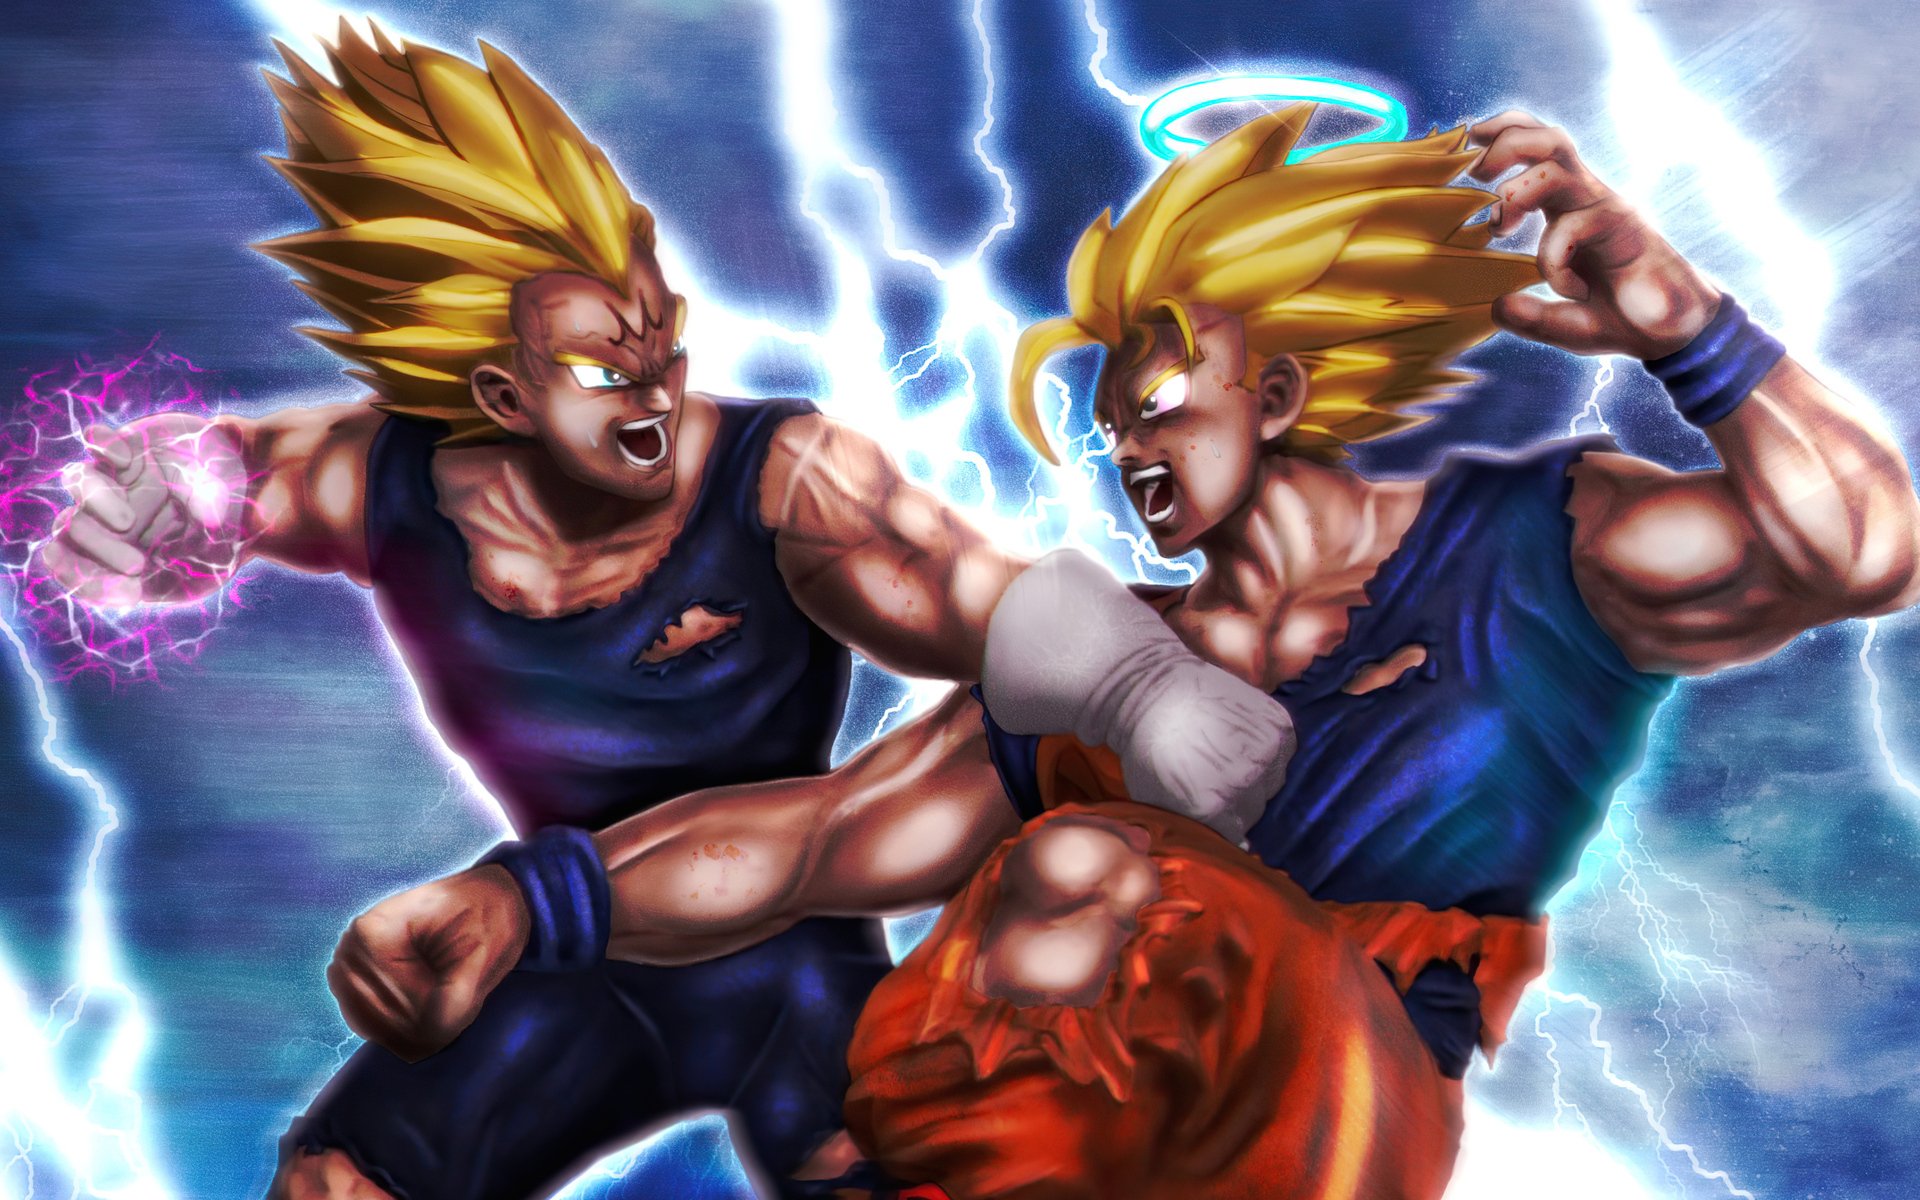 Goku vs Vegeta by Teo SteelAwake